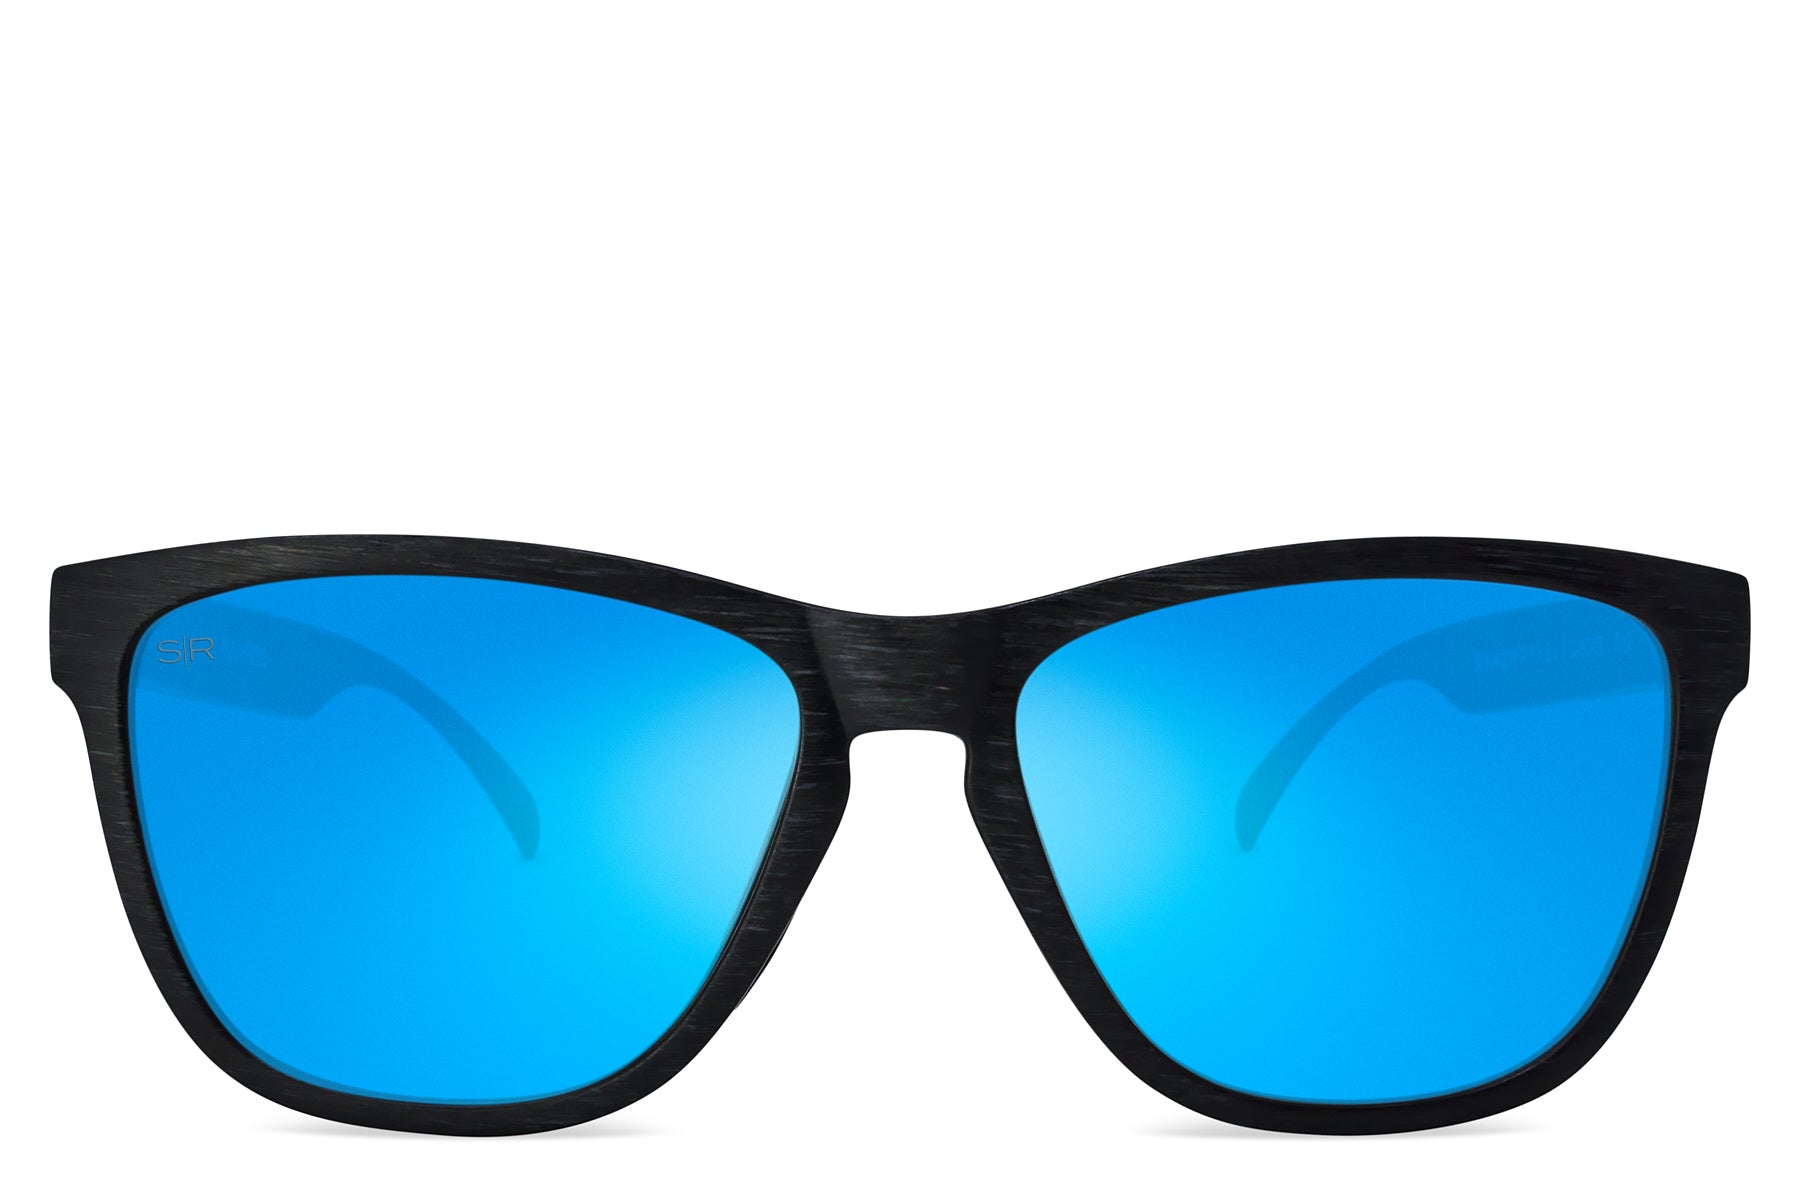 Shady Rays®  Polarized Sunglasses